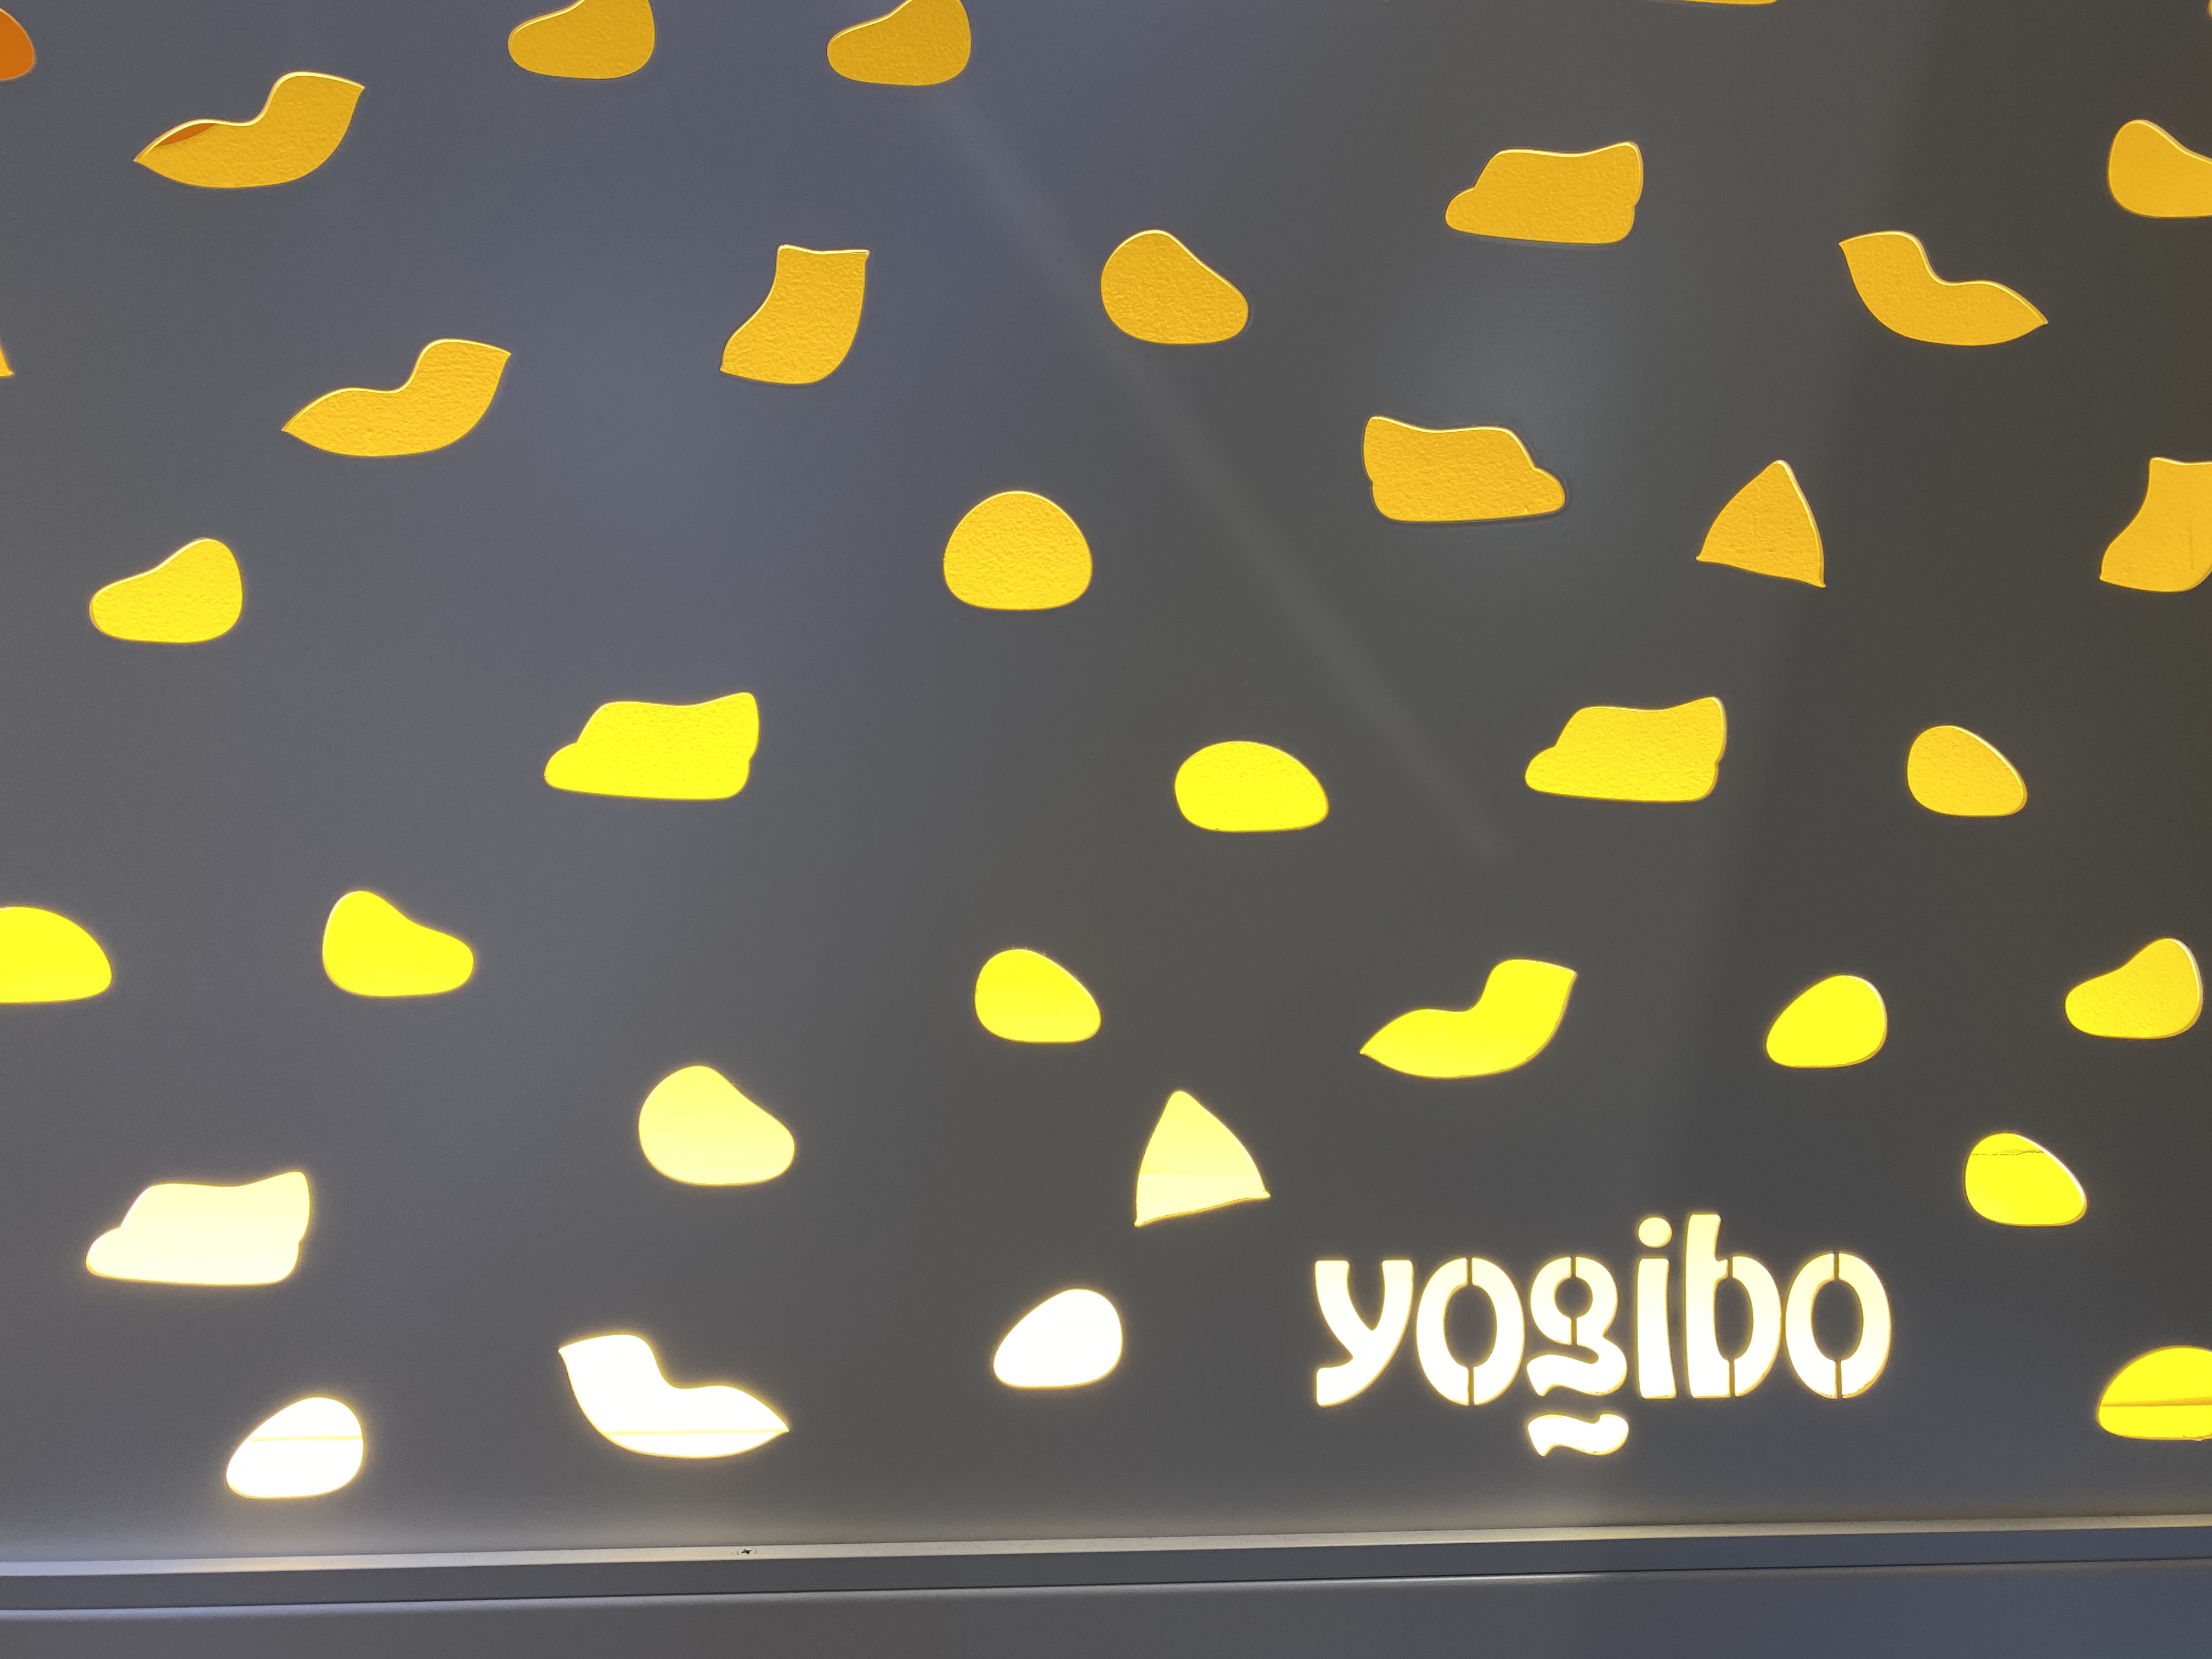 銀座yogiboに行った